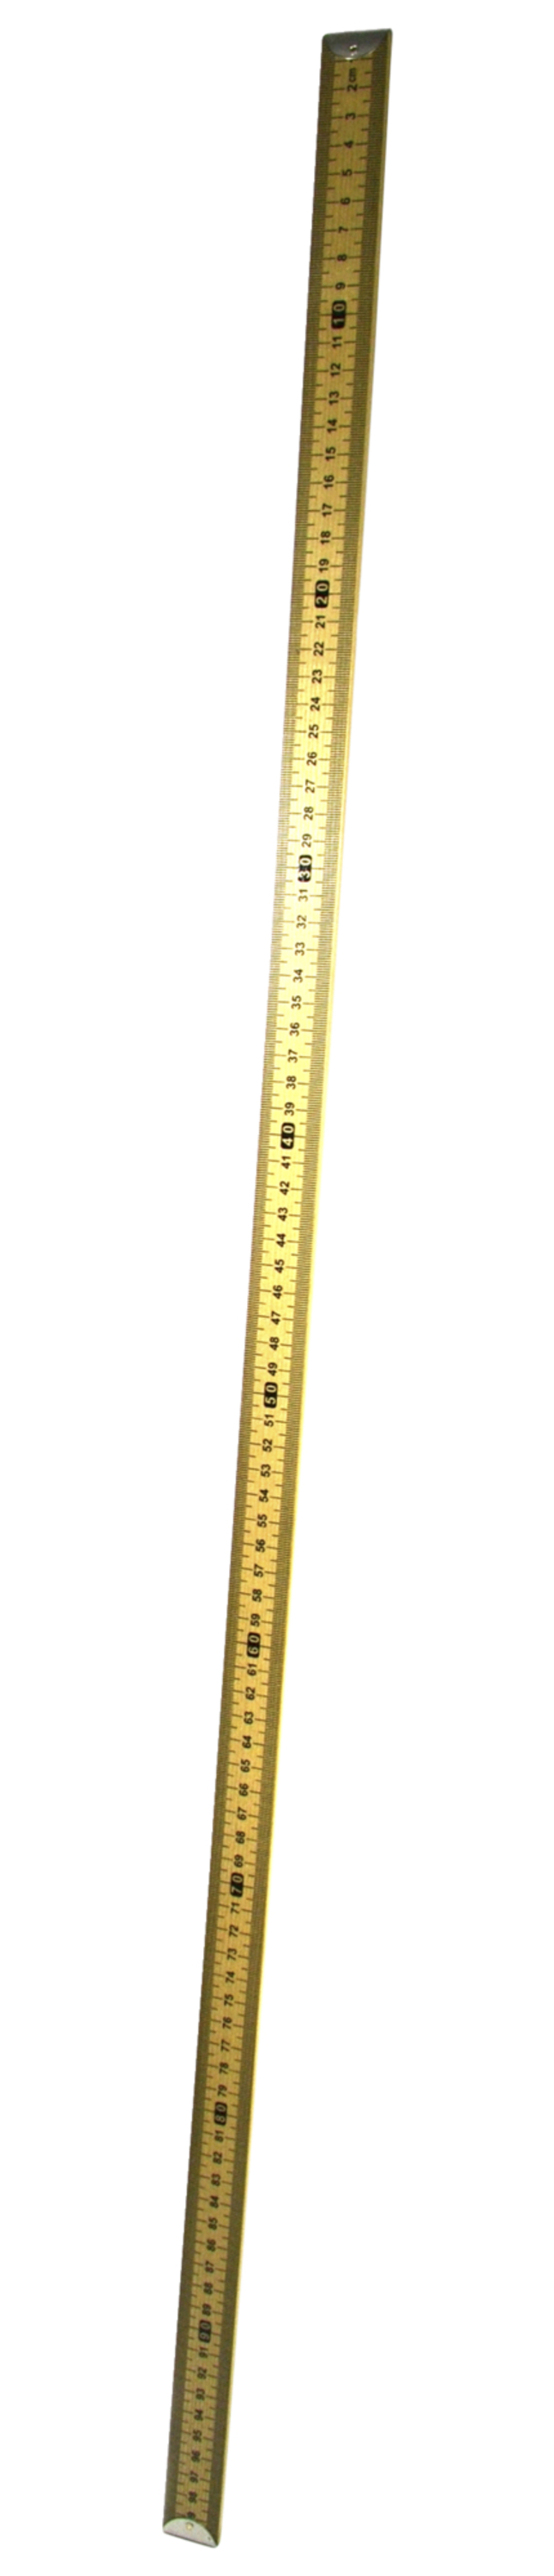 EISCO Hardwood Meter Stick